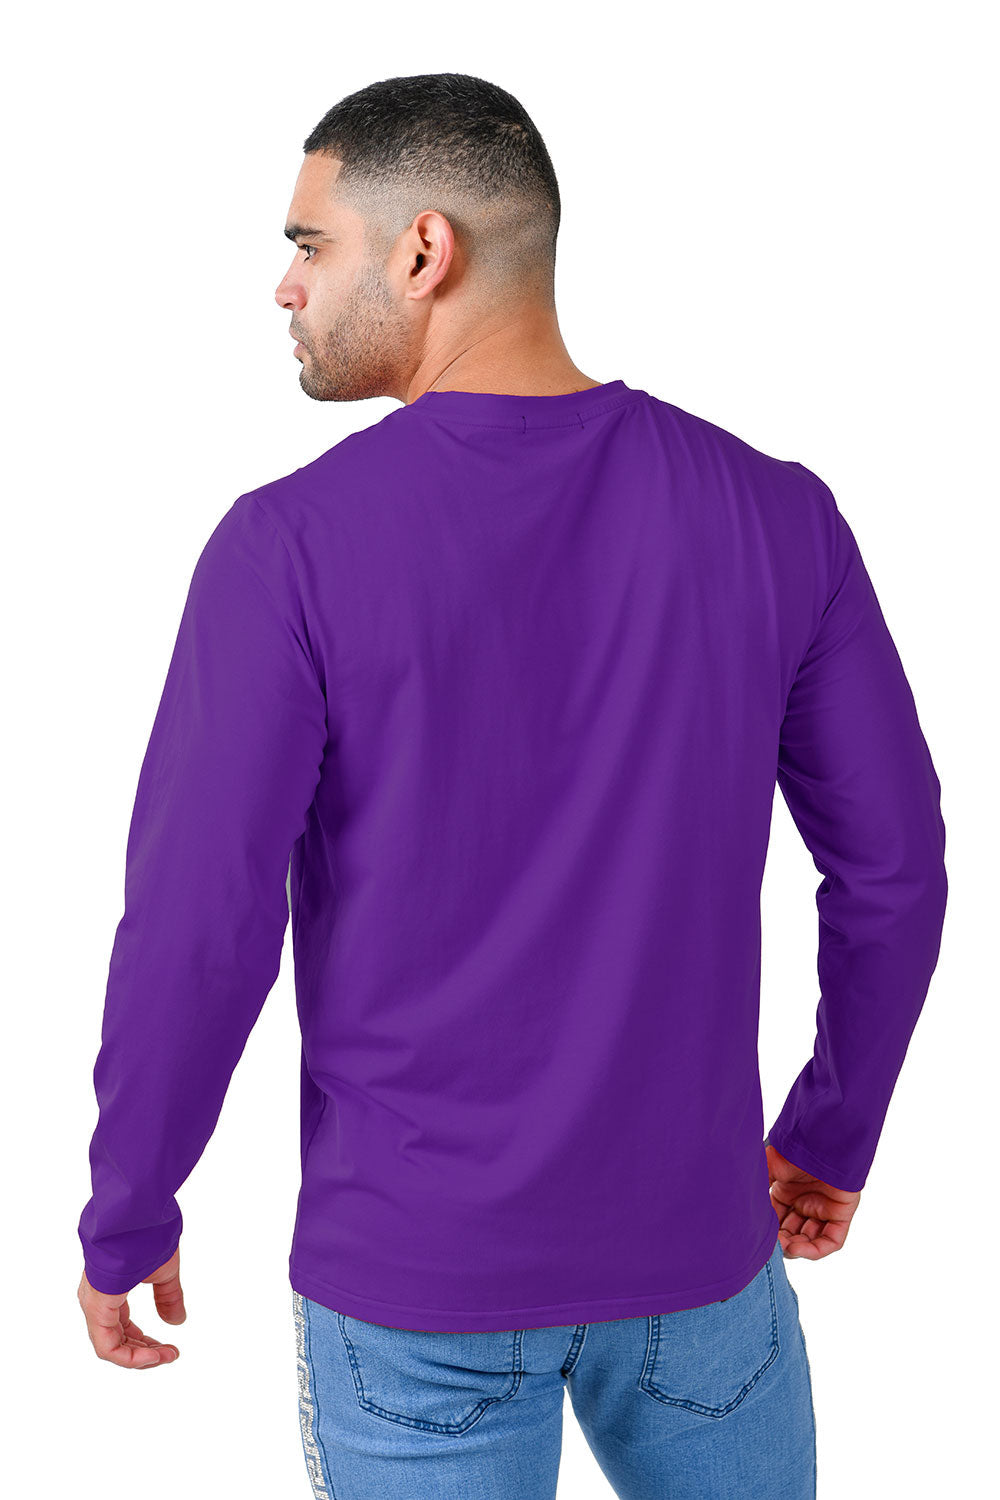 Barabas Men's Solid Color Crew Neck Sweatshirts LV127 purple